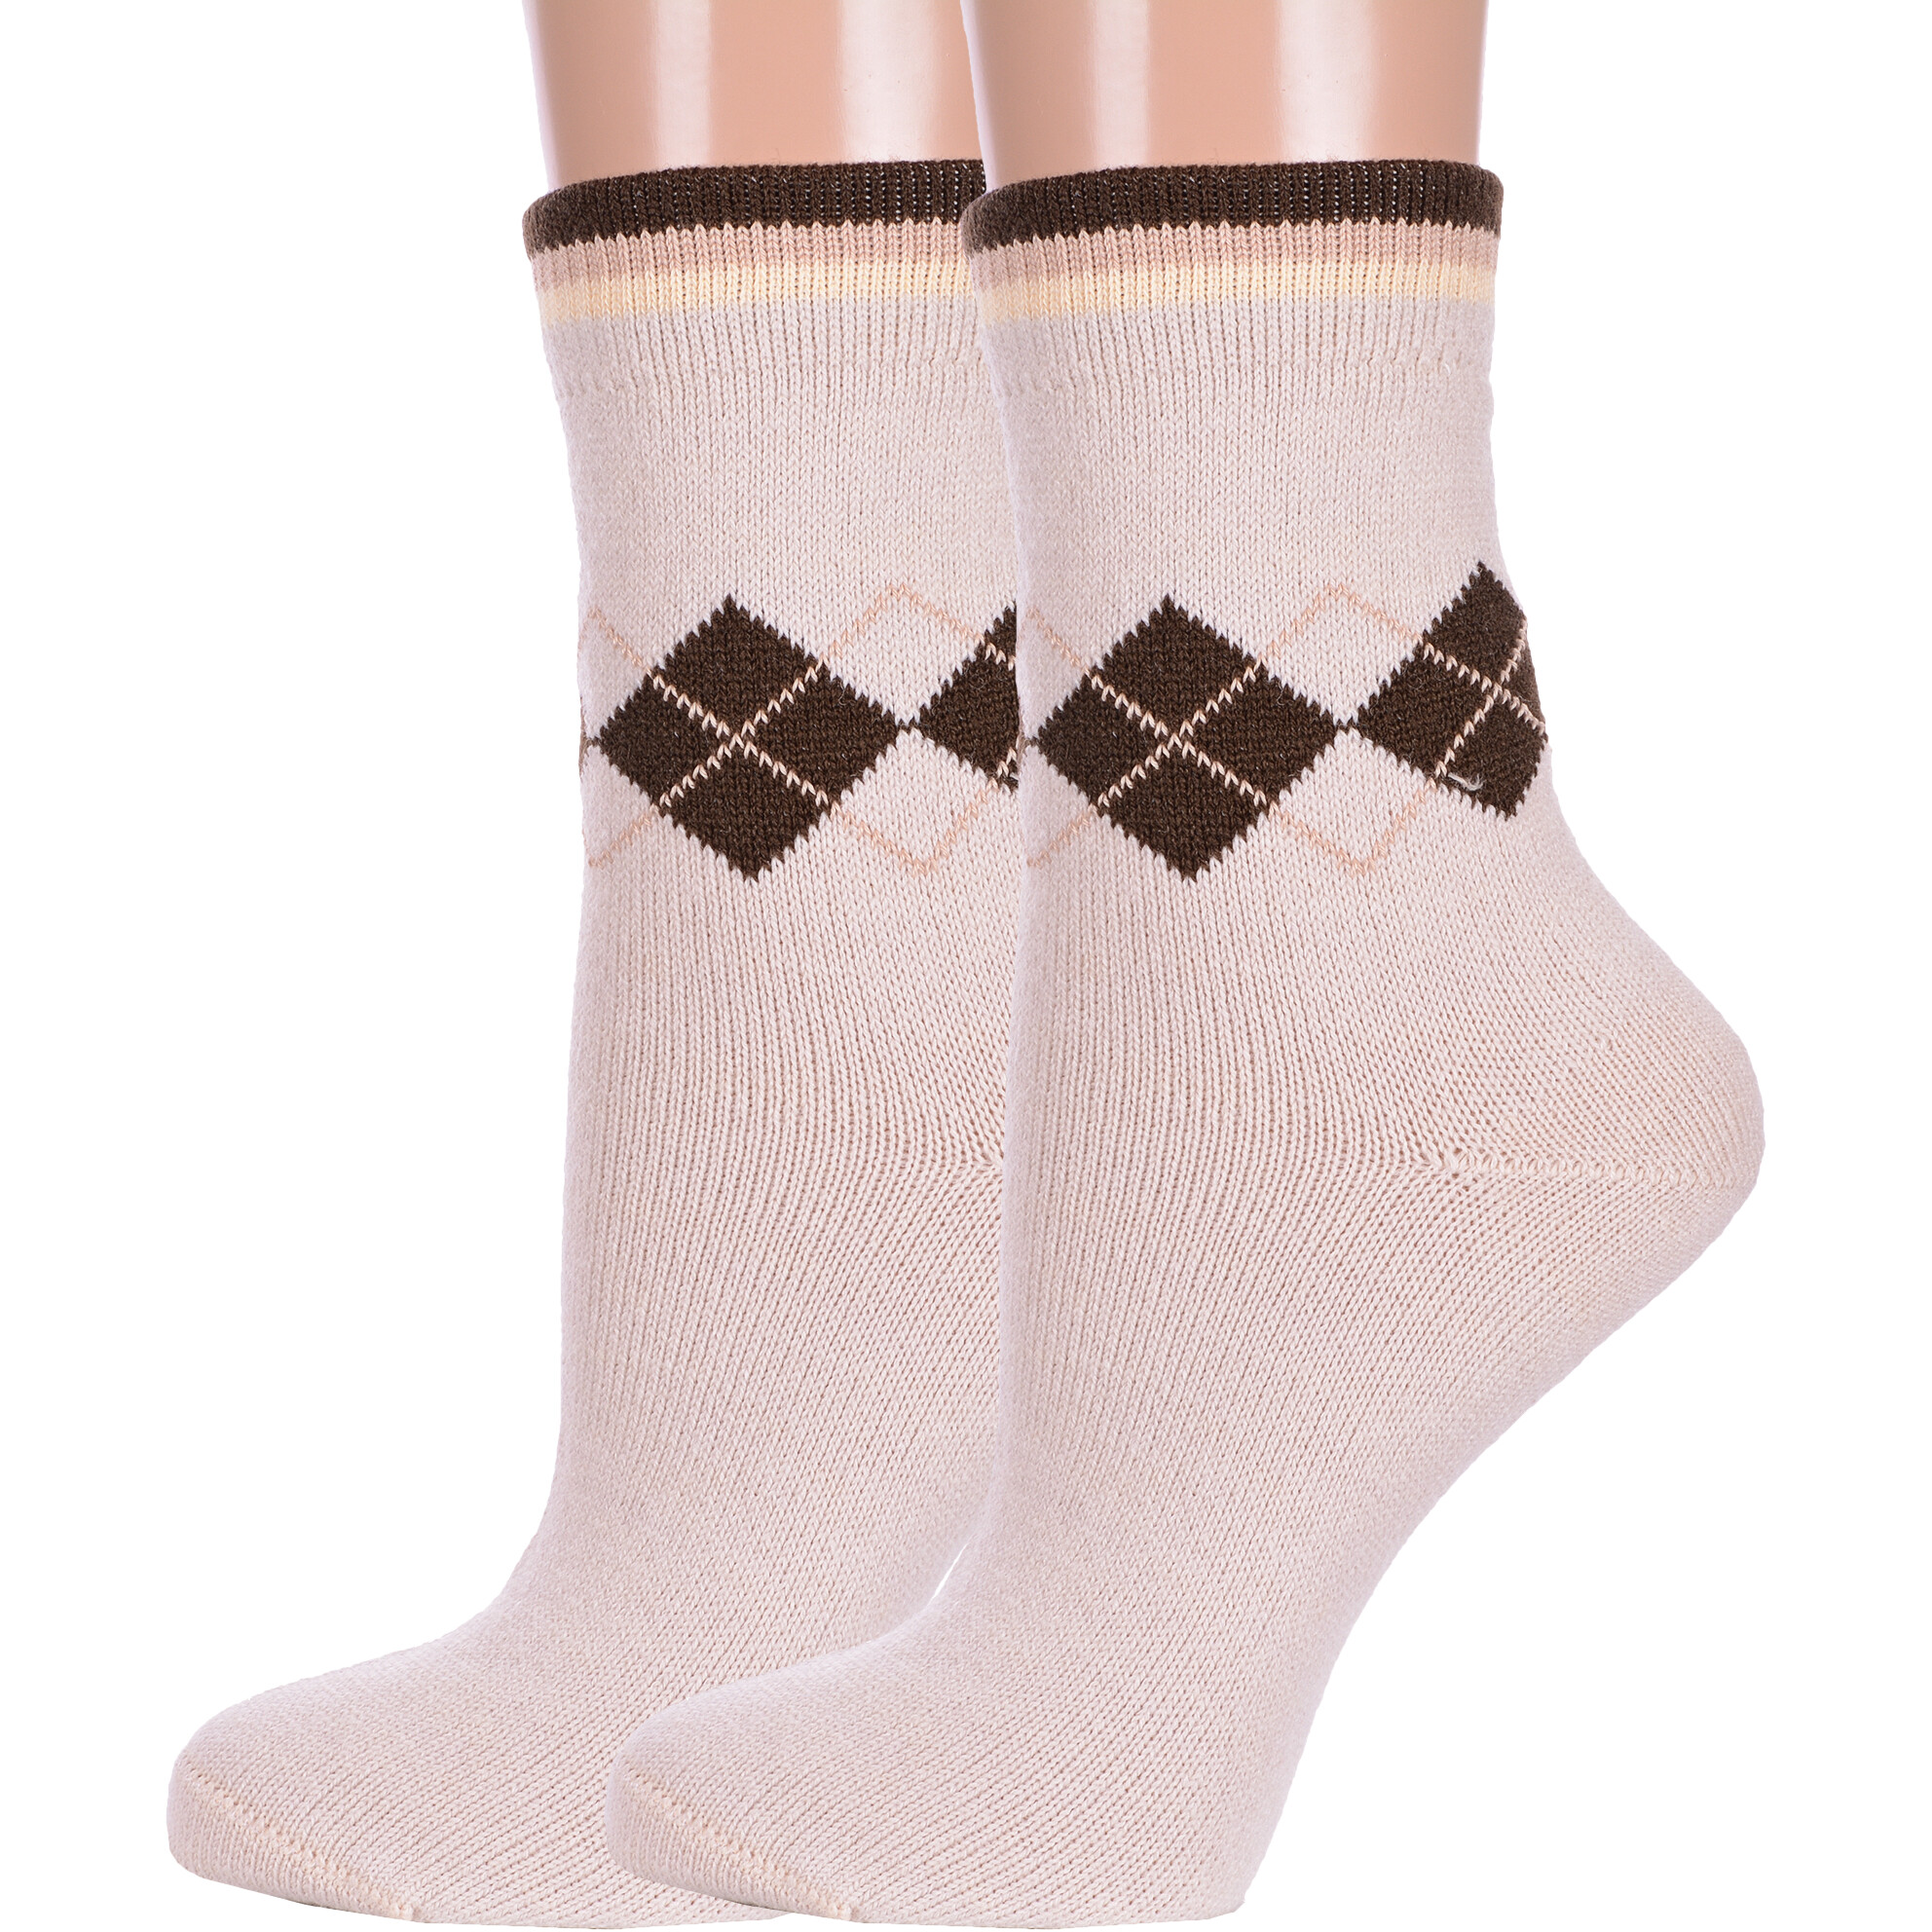 Комплект носков женских LorenzLine 2-В17 бежевых 23 2 пары